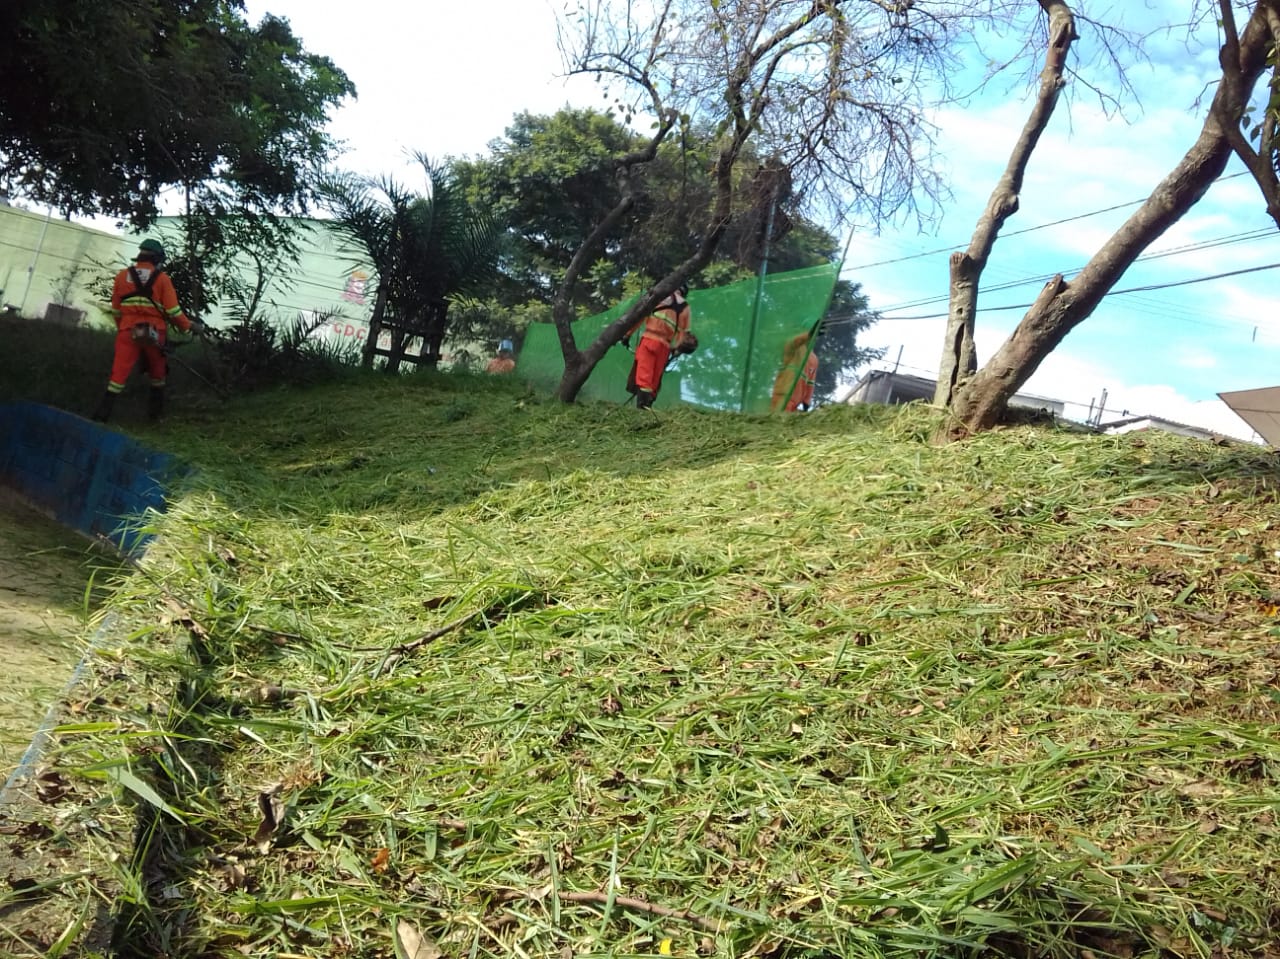 #PraCegoVer - Trabalhadores em macacões laranja e amarelo cortam grama em um talude (encosta). Dois outros trabalhadores sustentam uma rede de proteção para evitar espalhar grama. No chão, os restos de grama cortada.